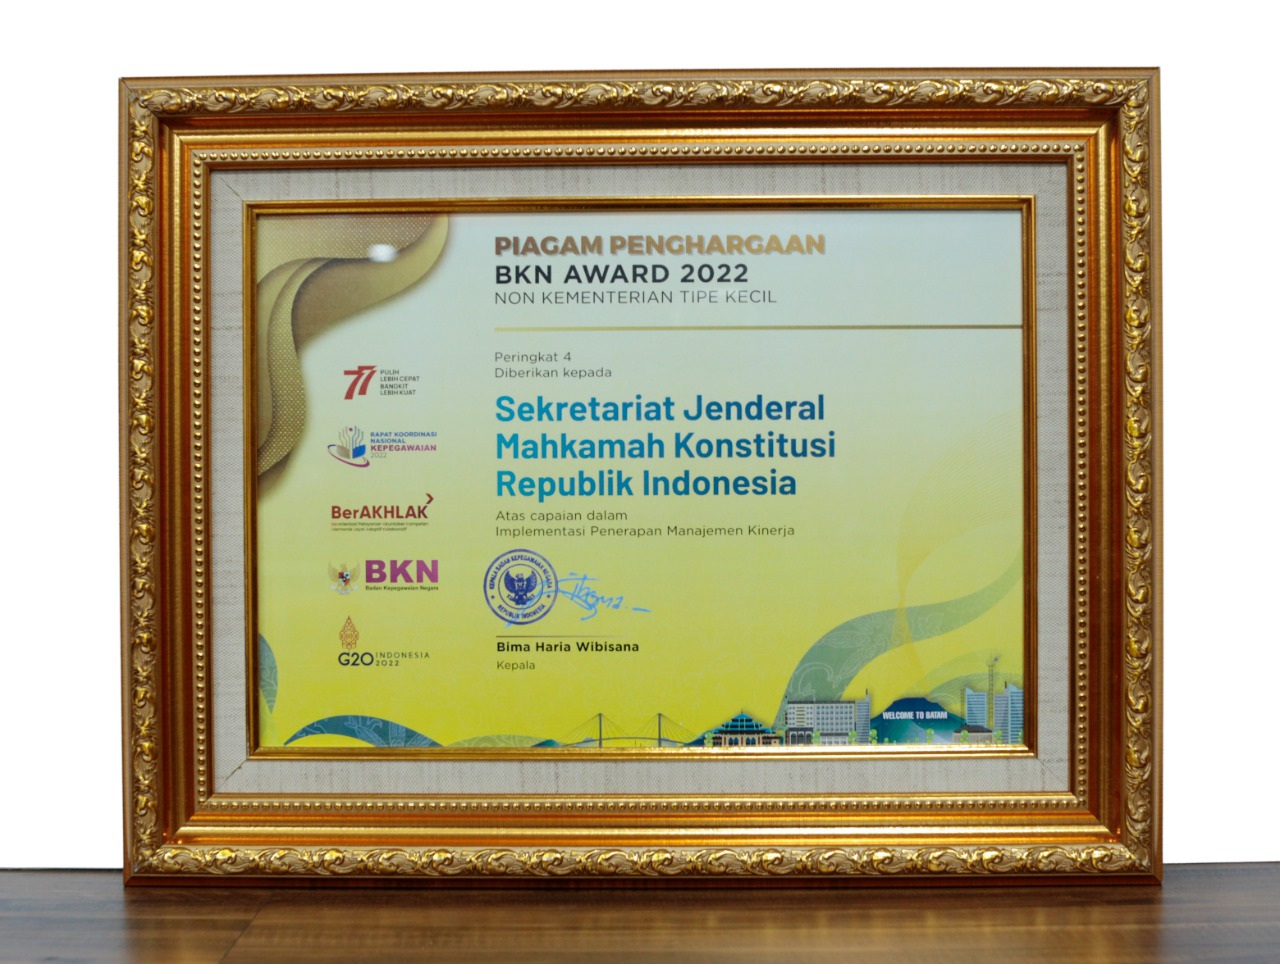 Piagam Penghargaan BKN Award 2022 Atas Capaian Dalam Implementasi Penerapan Manajemen Kinerja